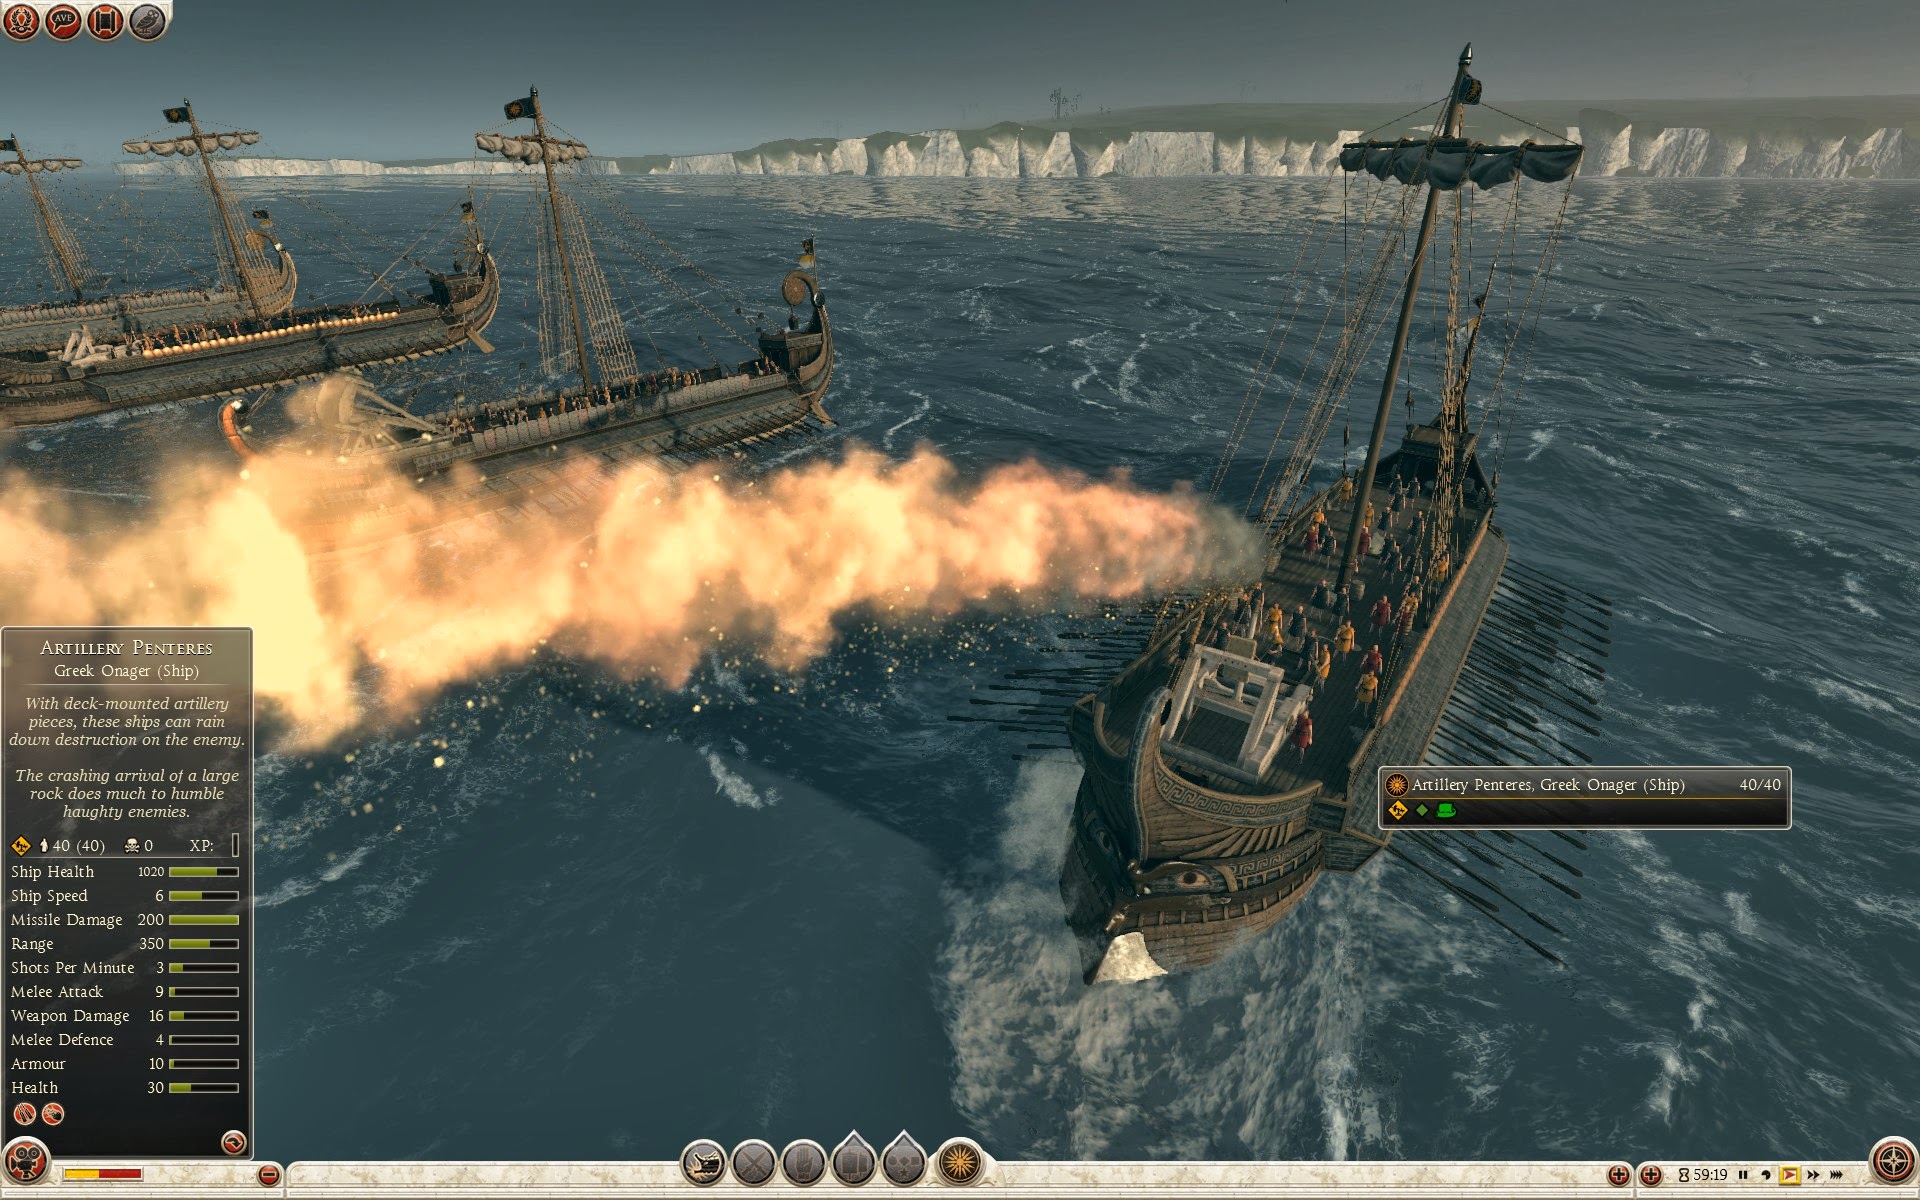 Penteres de artillería - Onagro griego (barco)